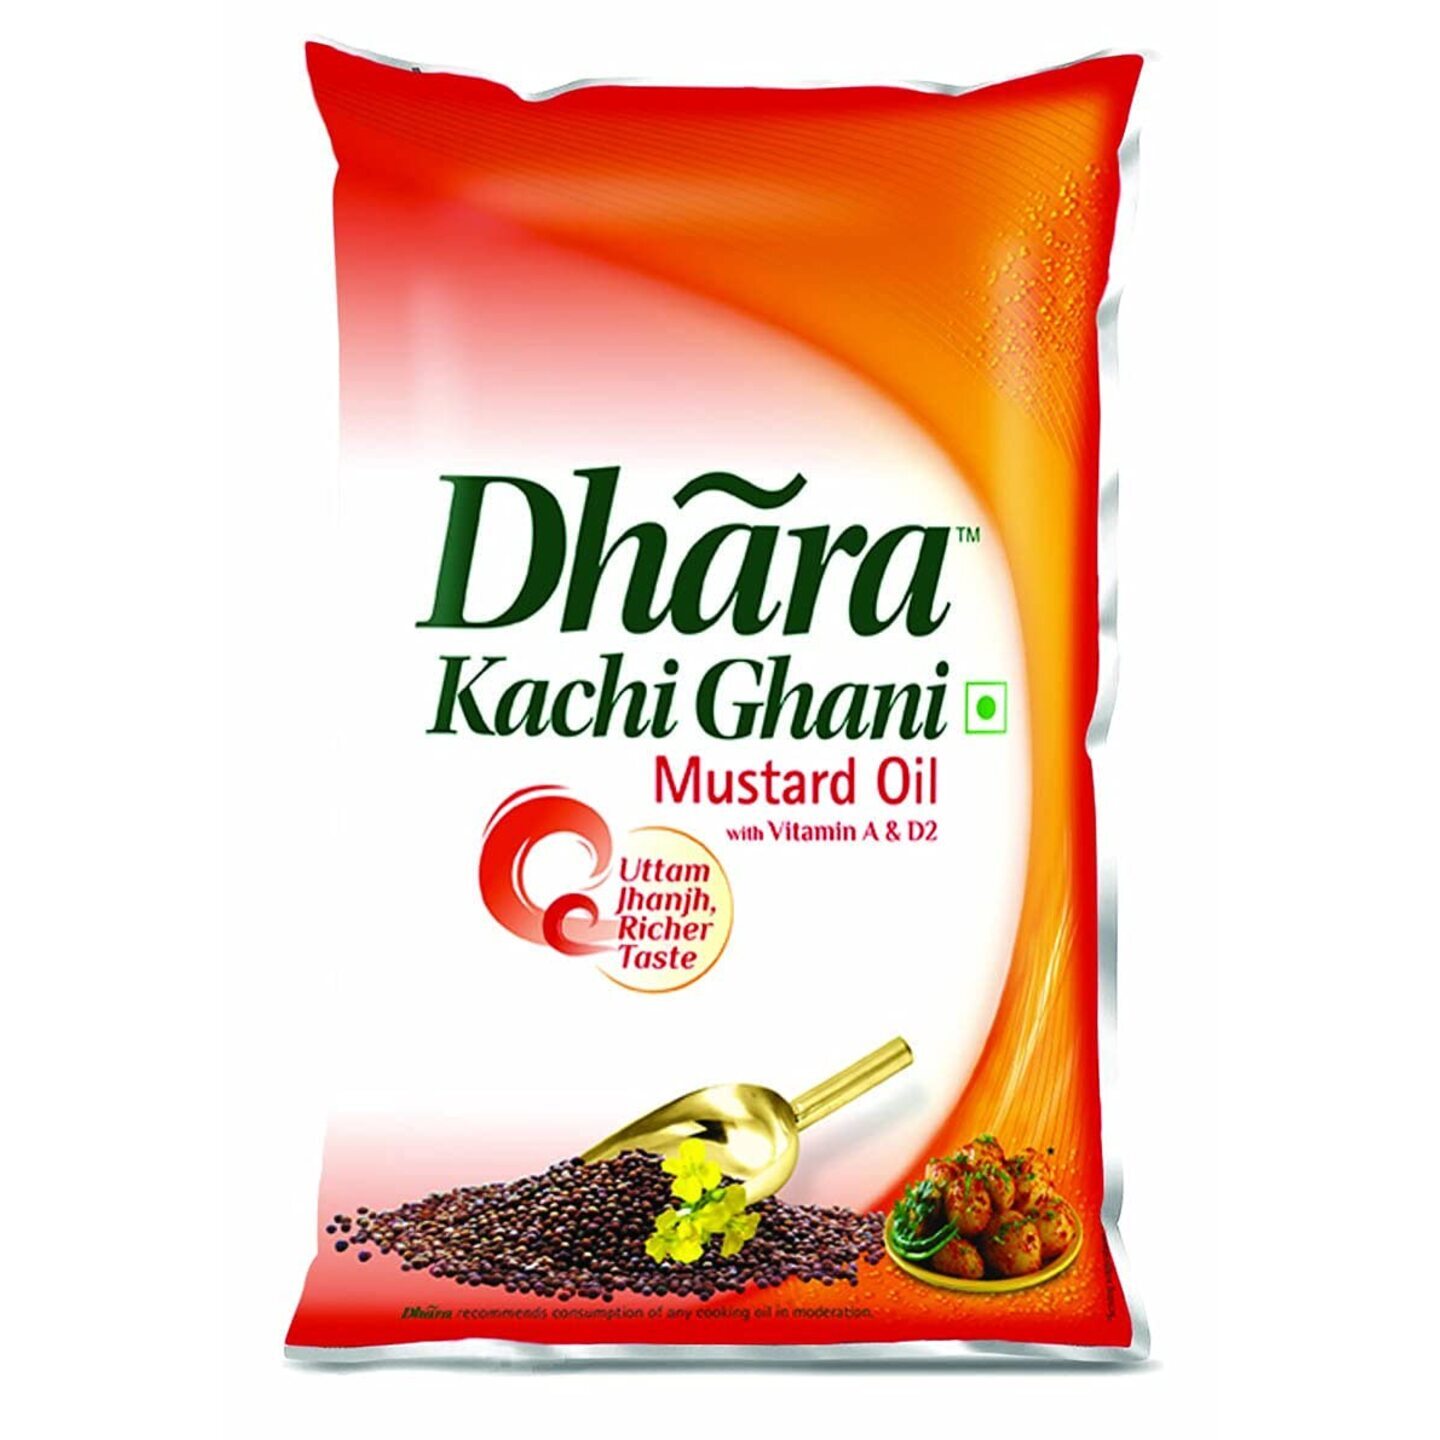 Dhara Kachhi Ghani Mustard Oil Pouch, 1L